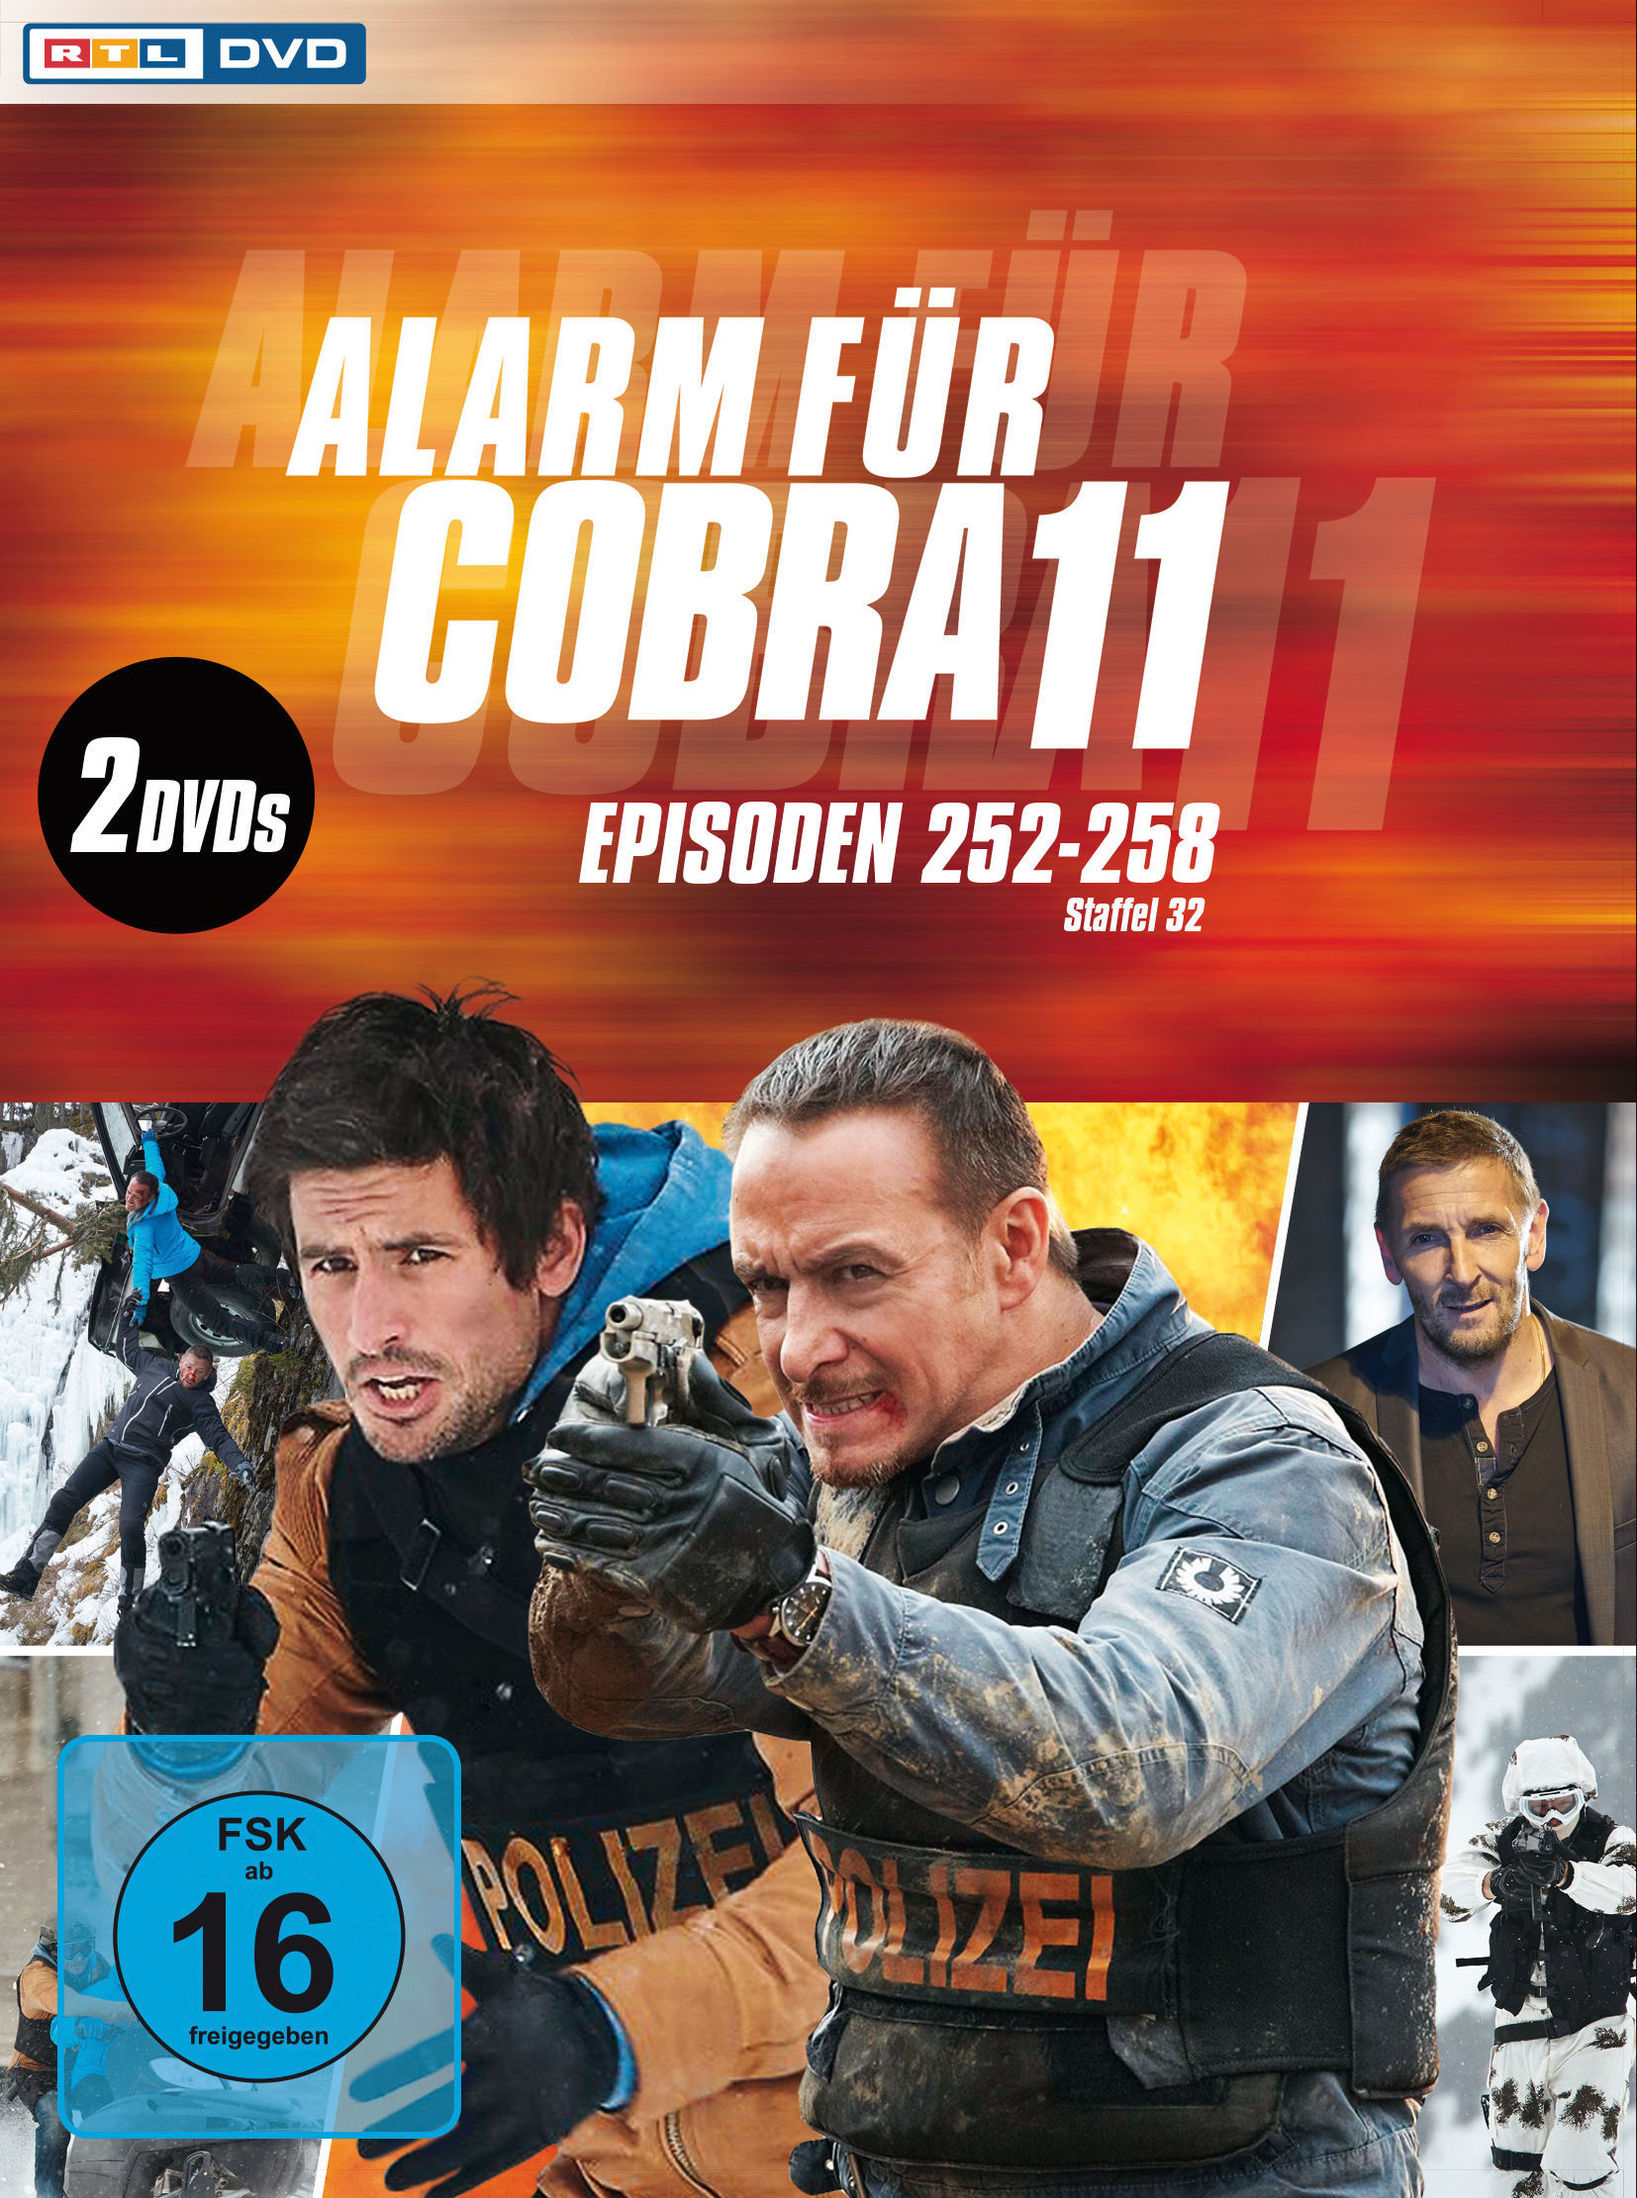 Alarm für Cobra 11 - Staffel 32 DVD bei Weltbild.de bestellen